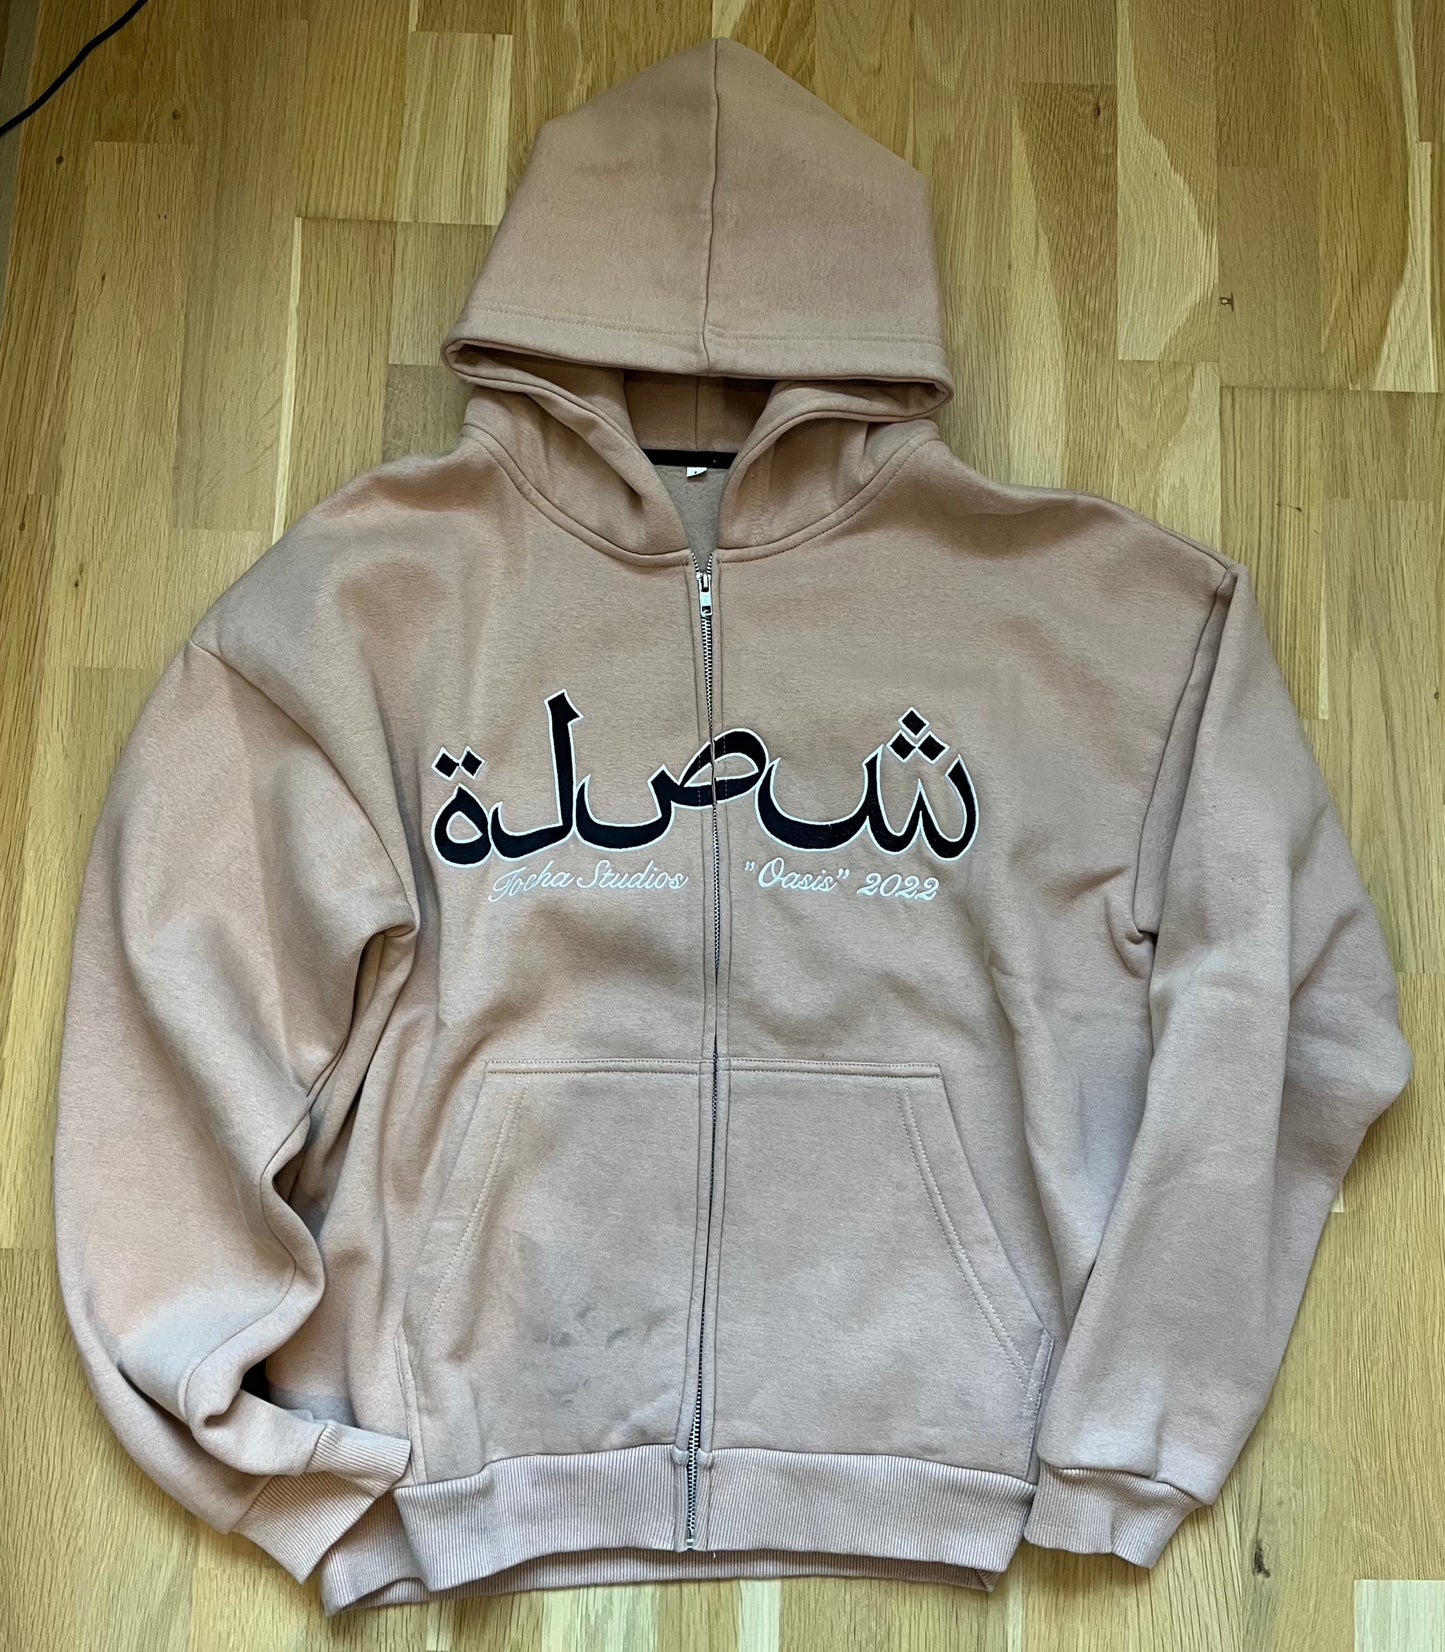 Oasis zip-hoodie